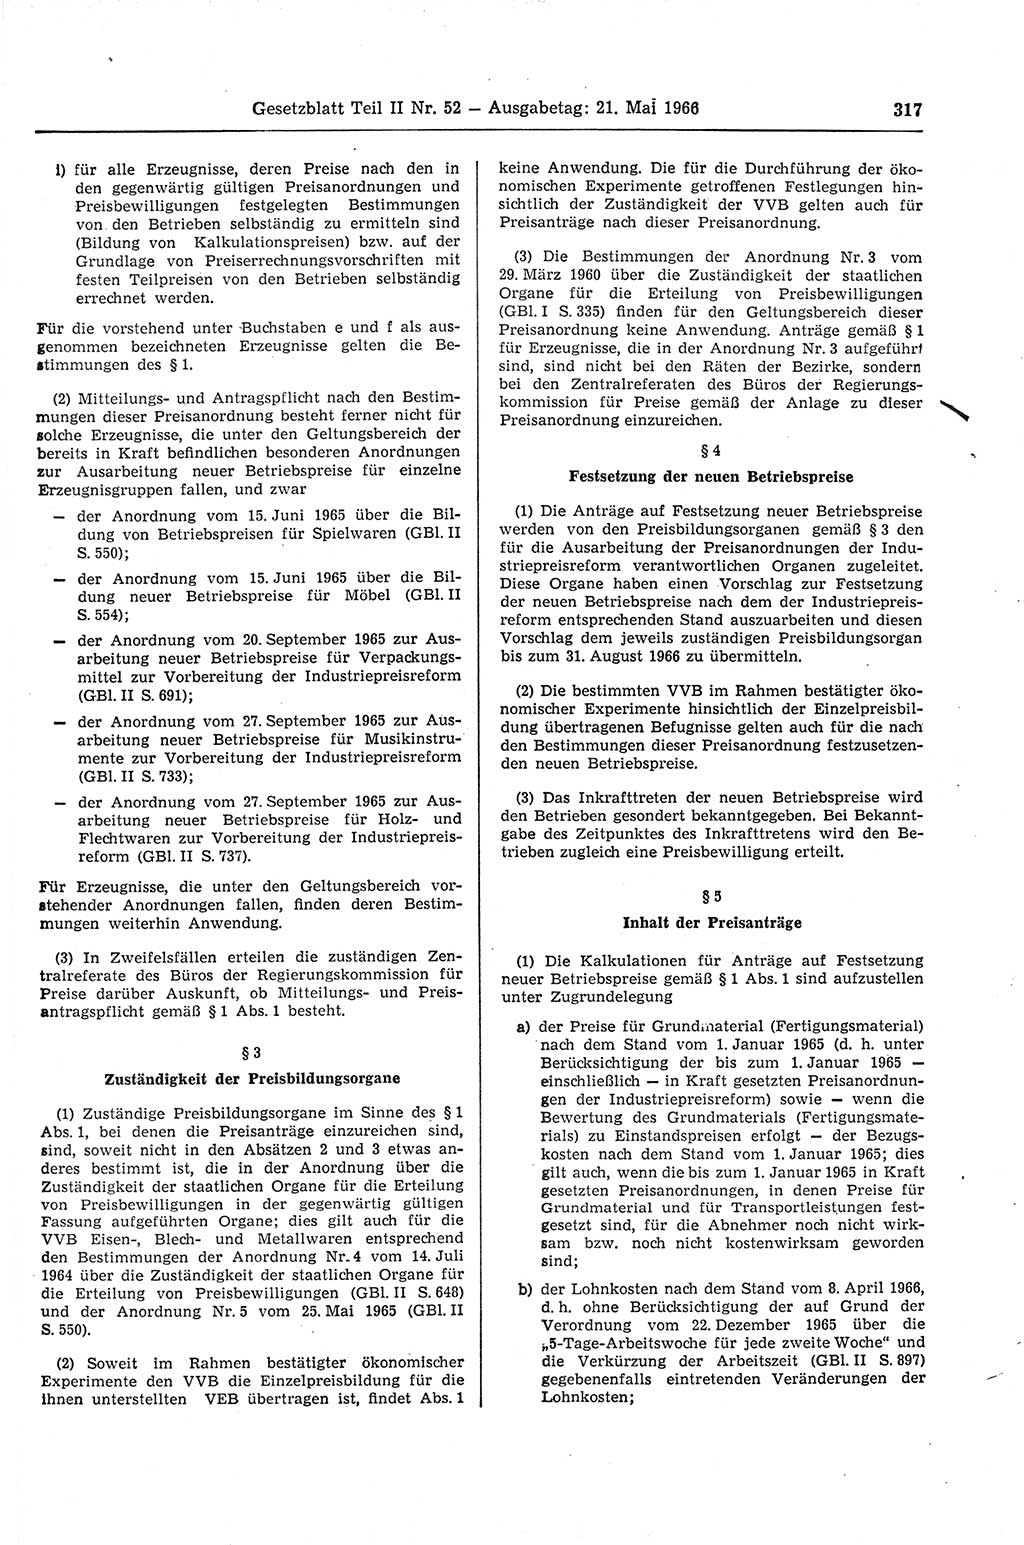 Gesetzblatt (GBl.) der Deutschen Demokratischen Republik (DDR) Teil ⅠⅠ 1966, Seite 317 (GBl. DDR ⅠⅠ 1966, S. 317)